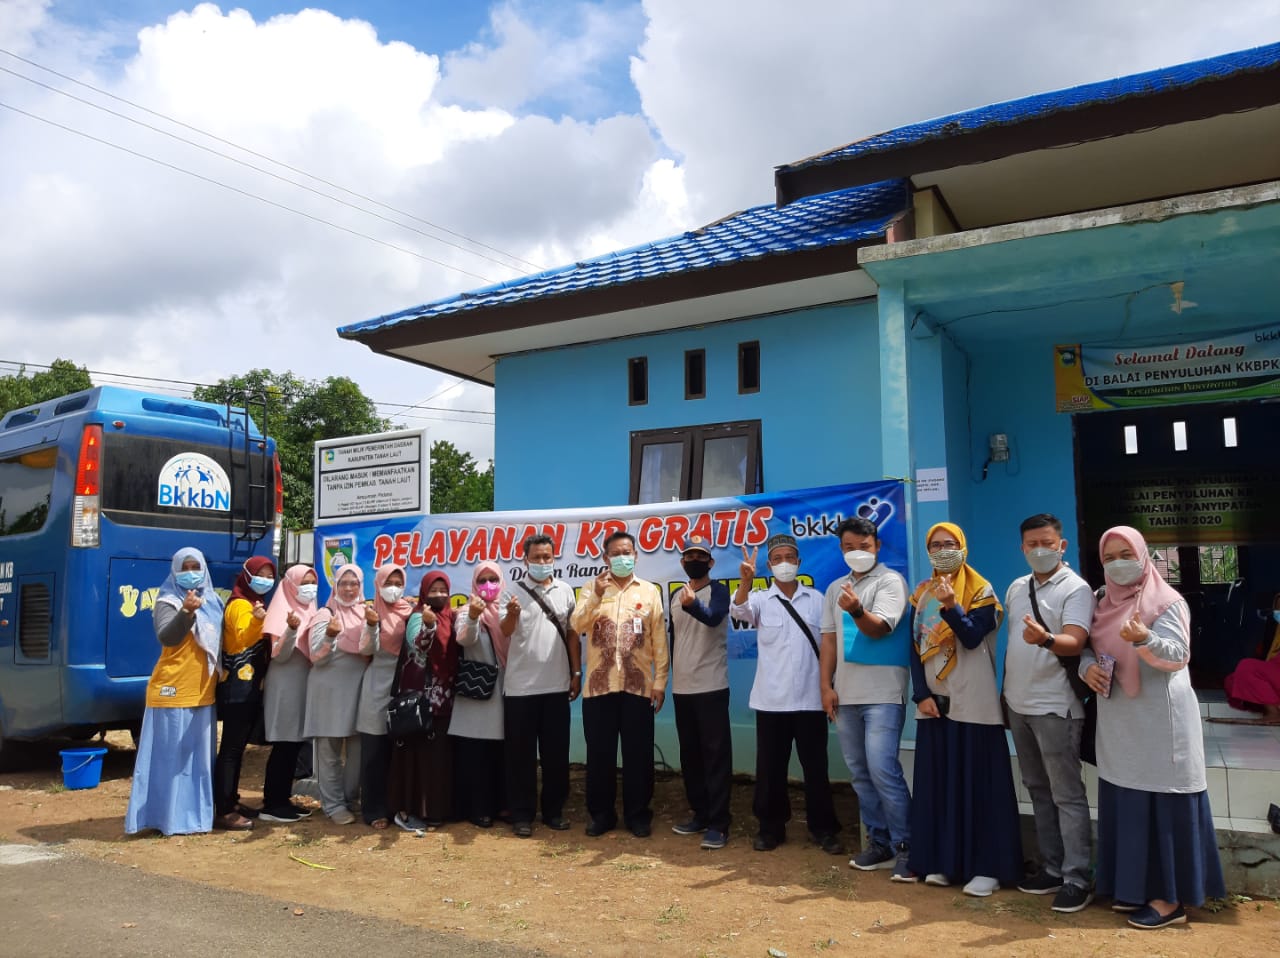 Pelayanan KB Gratis Dalam Rangka Kegiatan Manunggal Tuntung Pandang di Desa Batu Mulya.